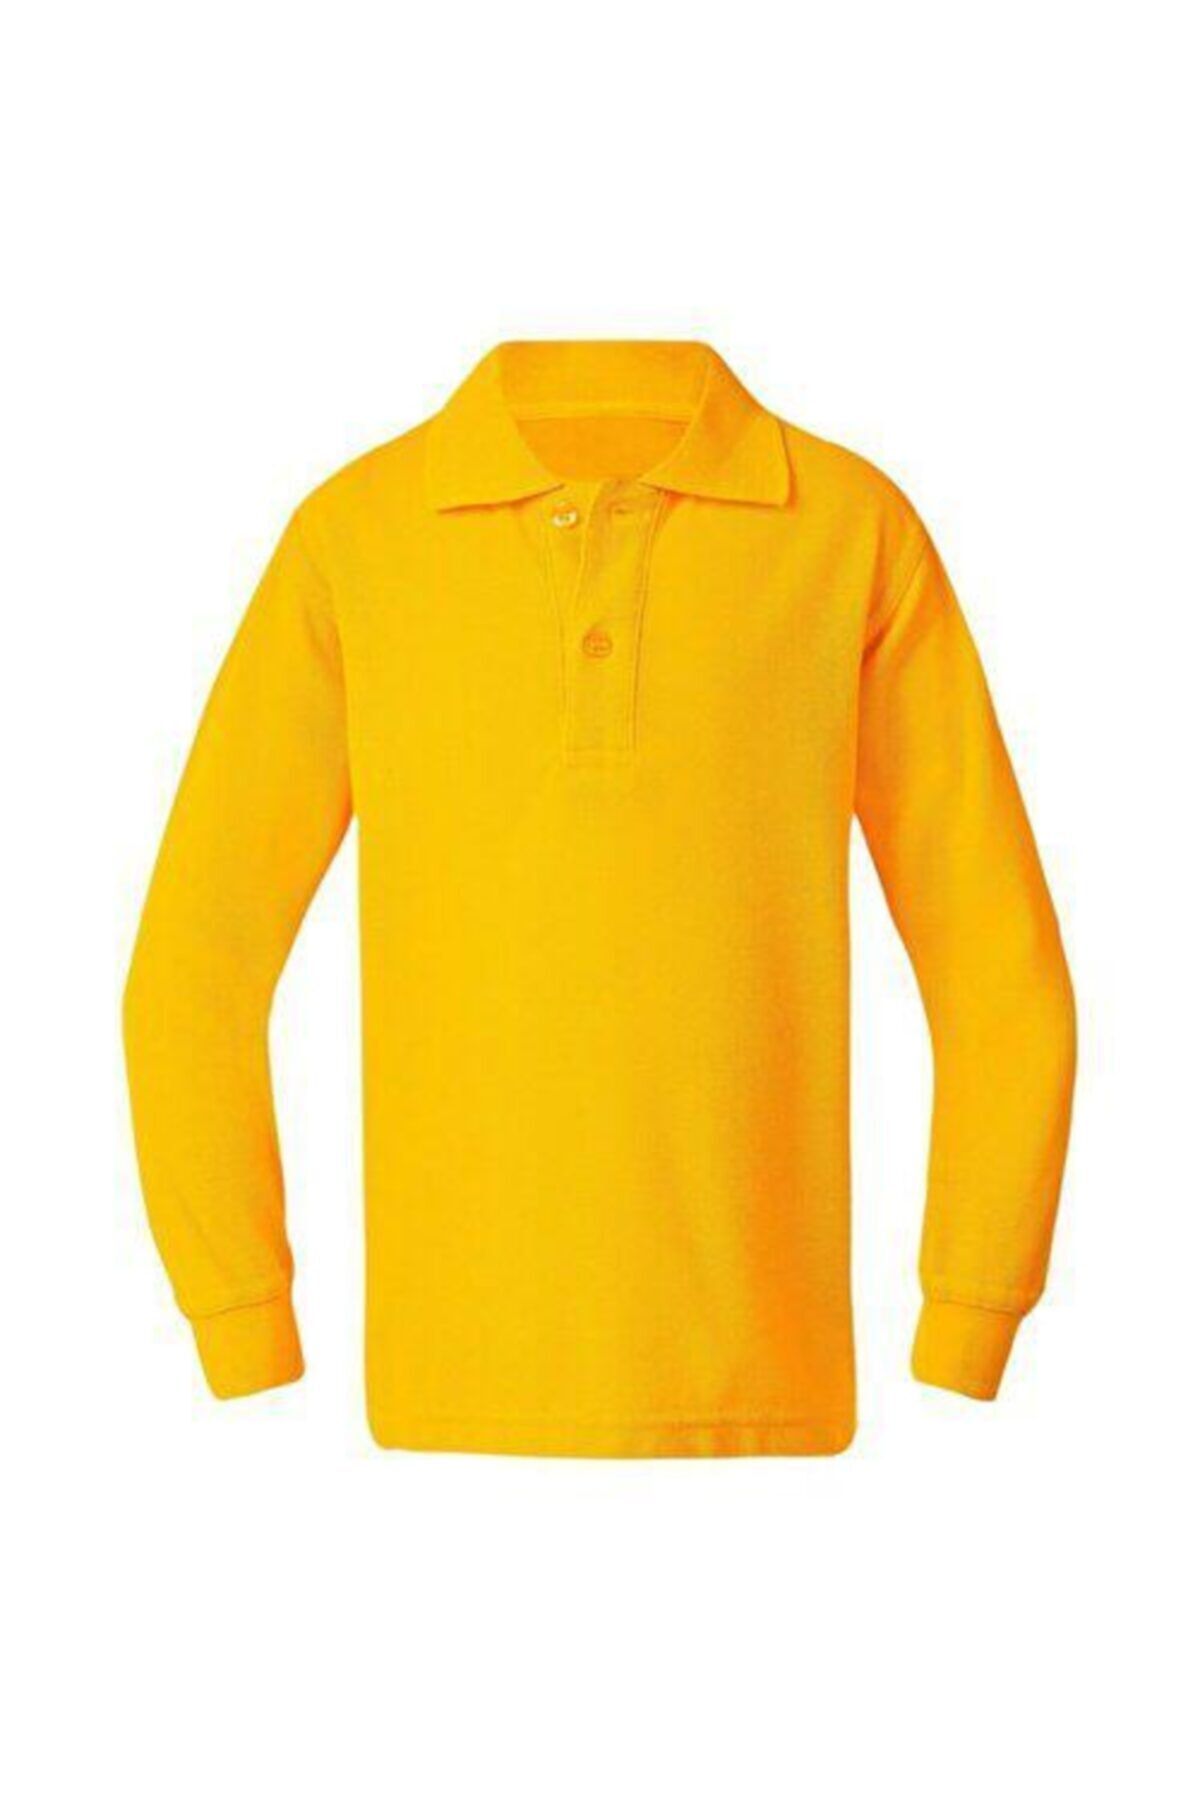 ümitteks iş ve okul kıyafetleri Unısex Penye Polo Yaka Sarı Uzun Kollu Okul Tişörtü